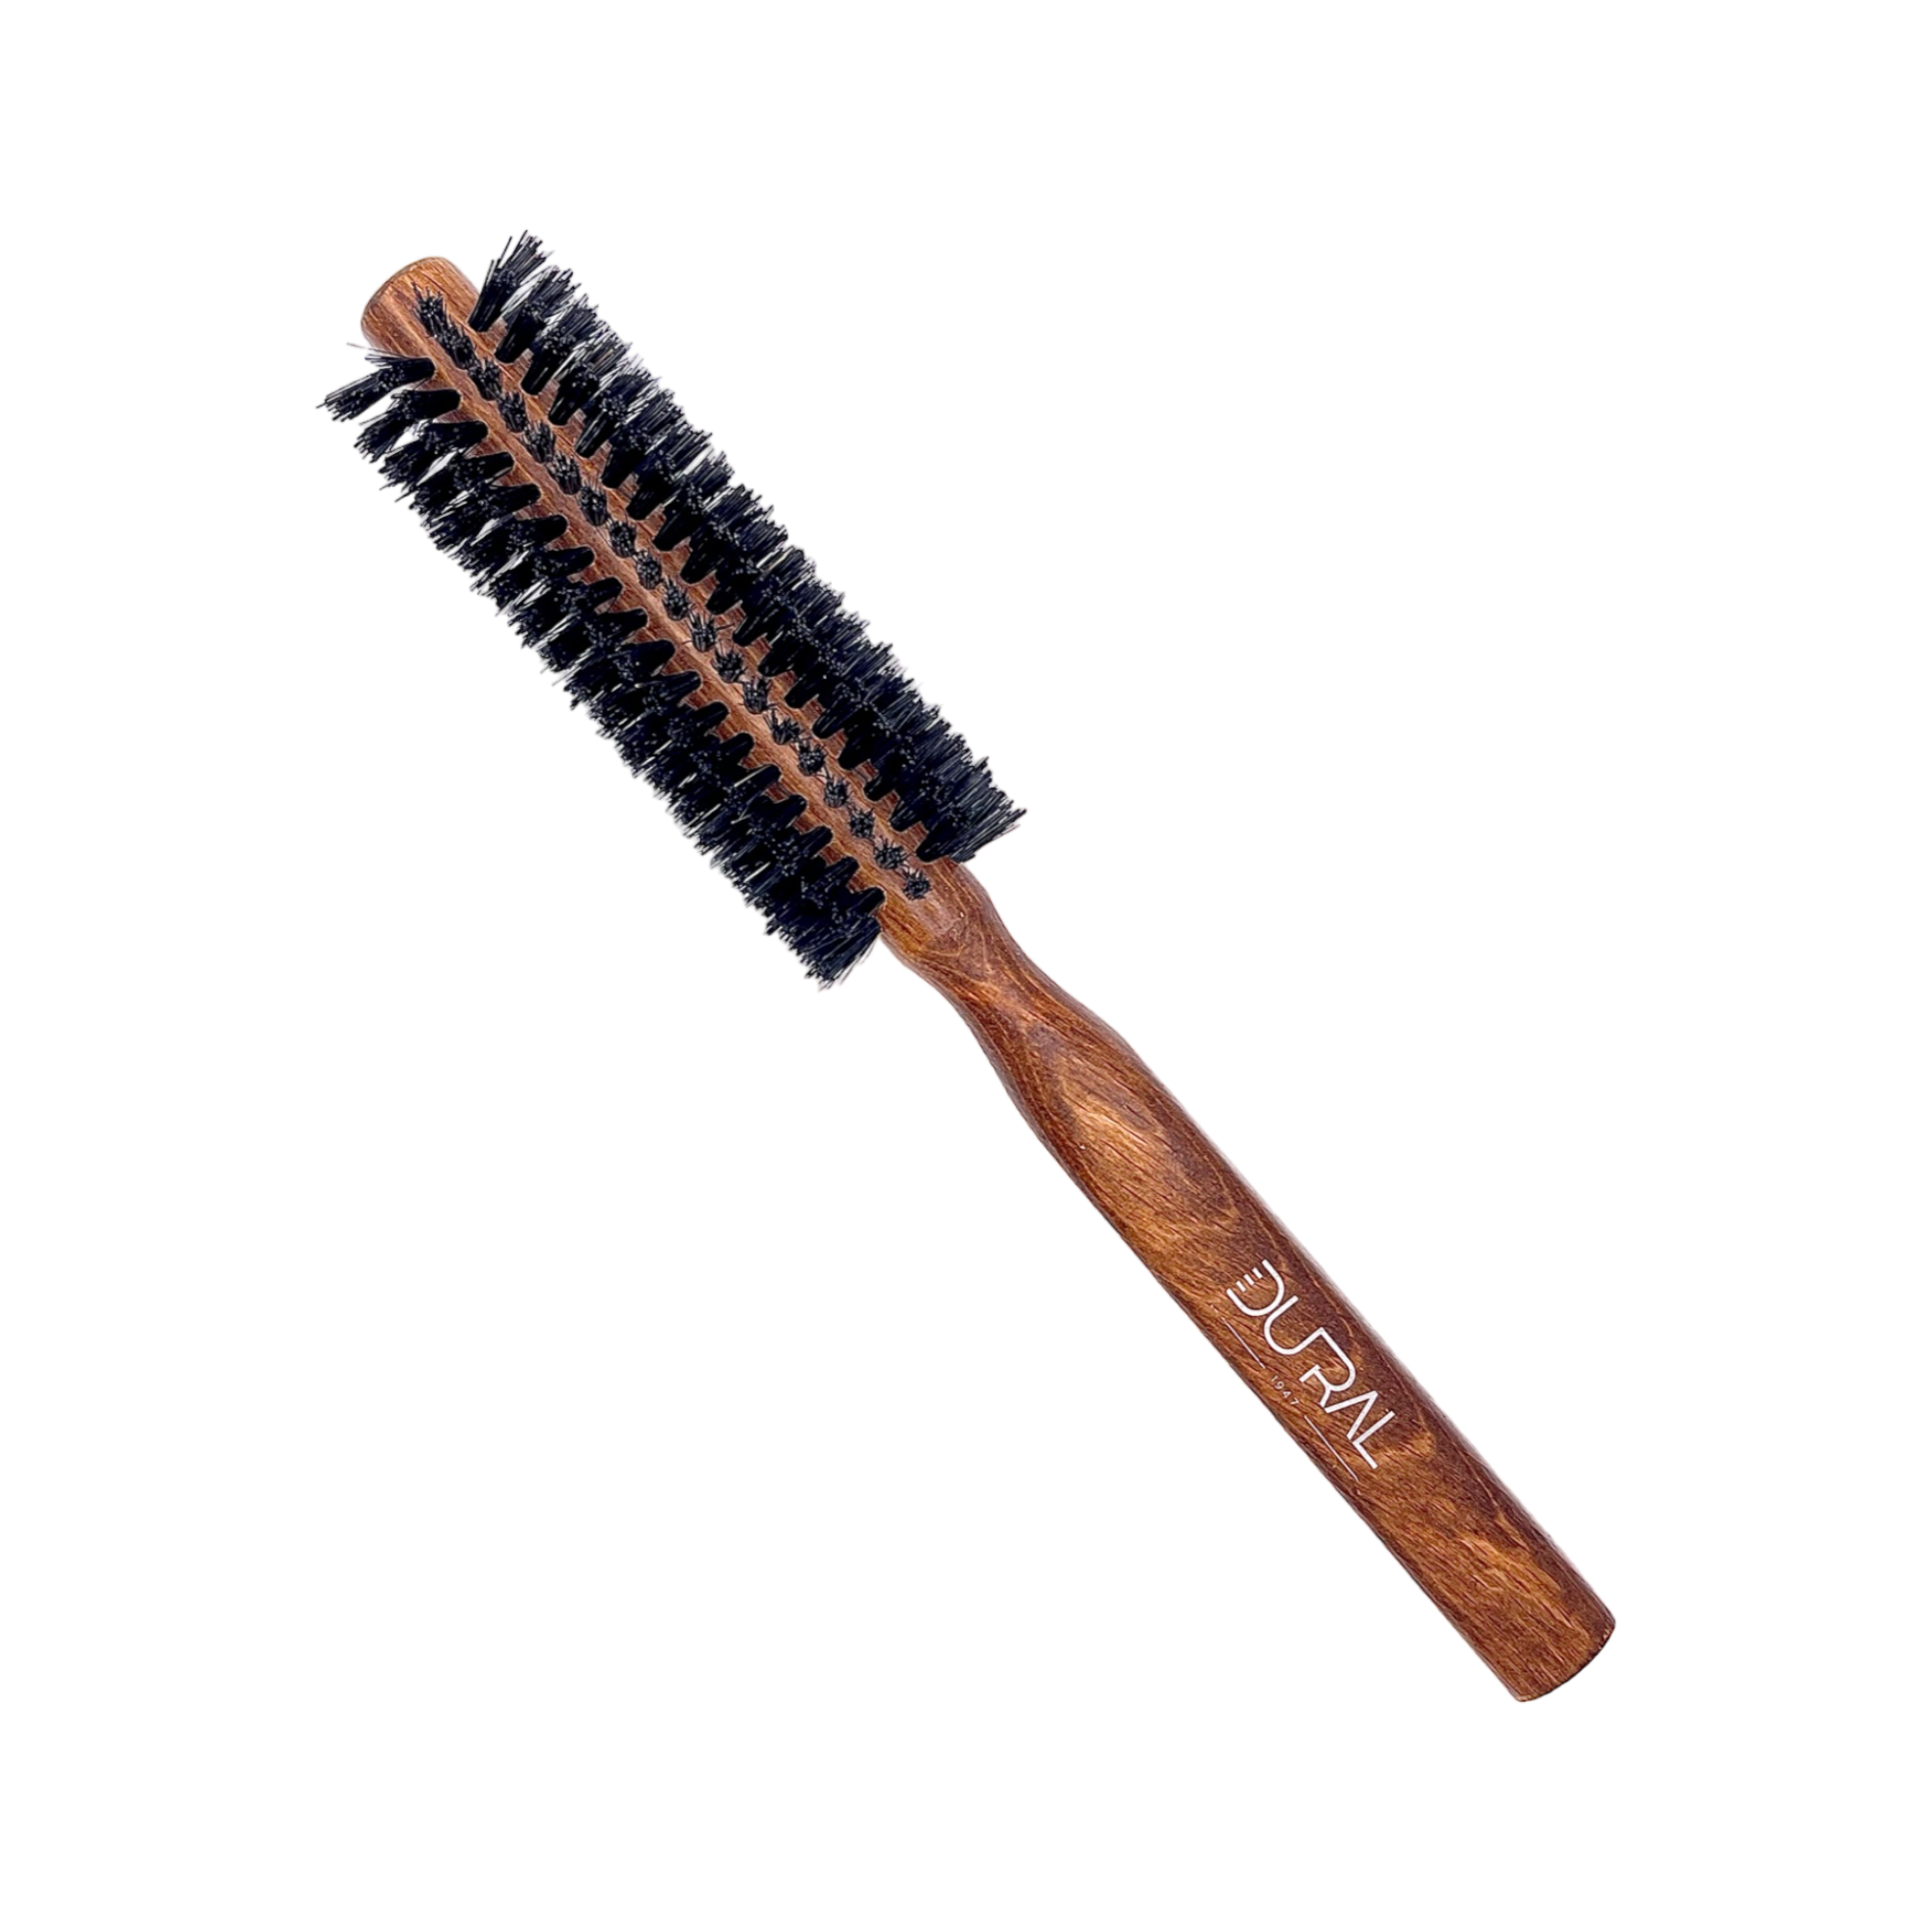 Dural Hair Brush 10 Rows Wood Pure Wild Boar Bristles